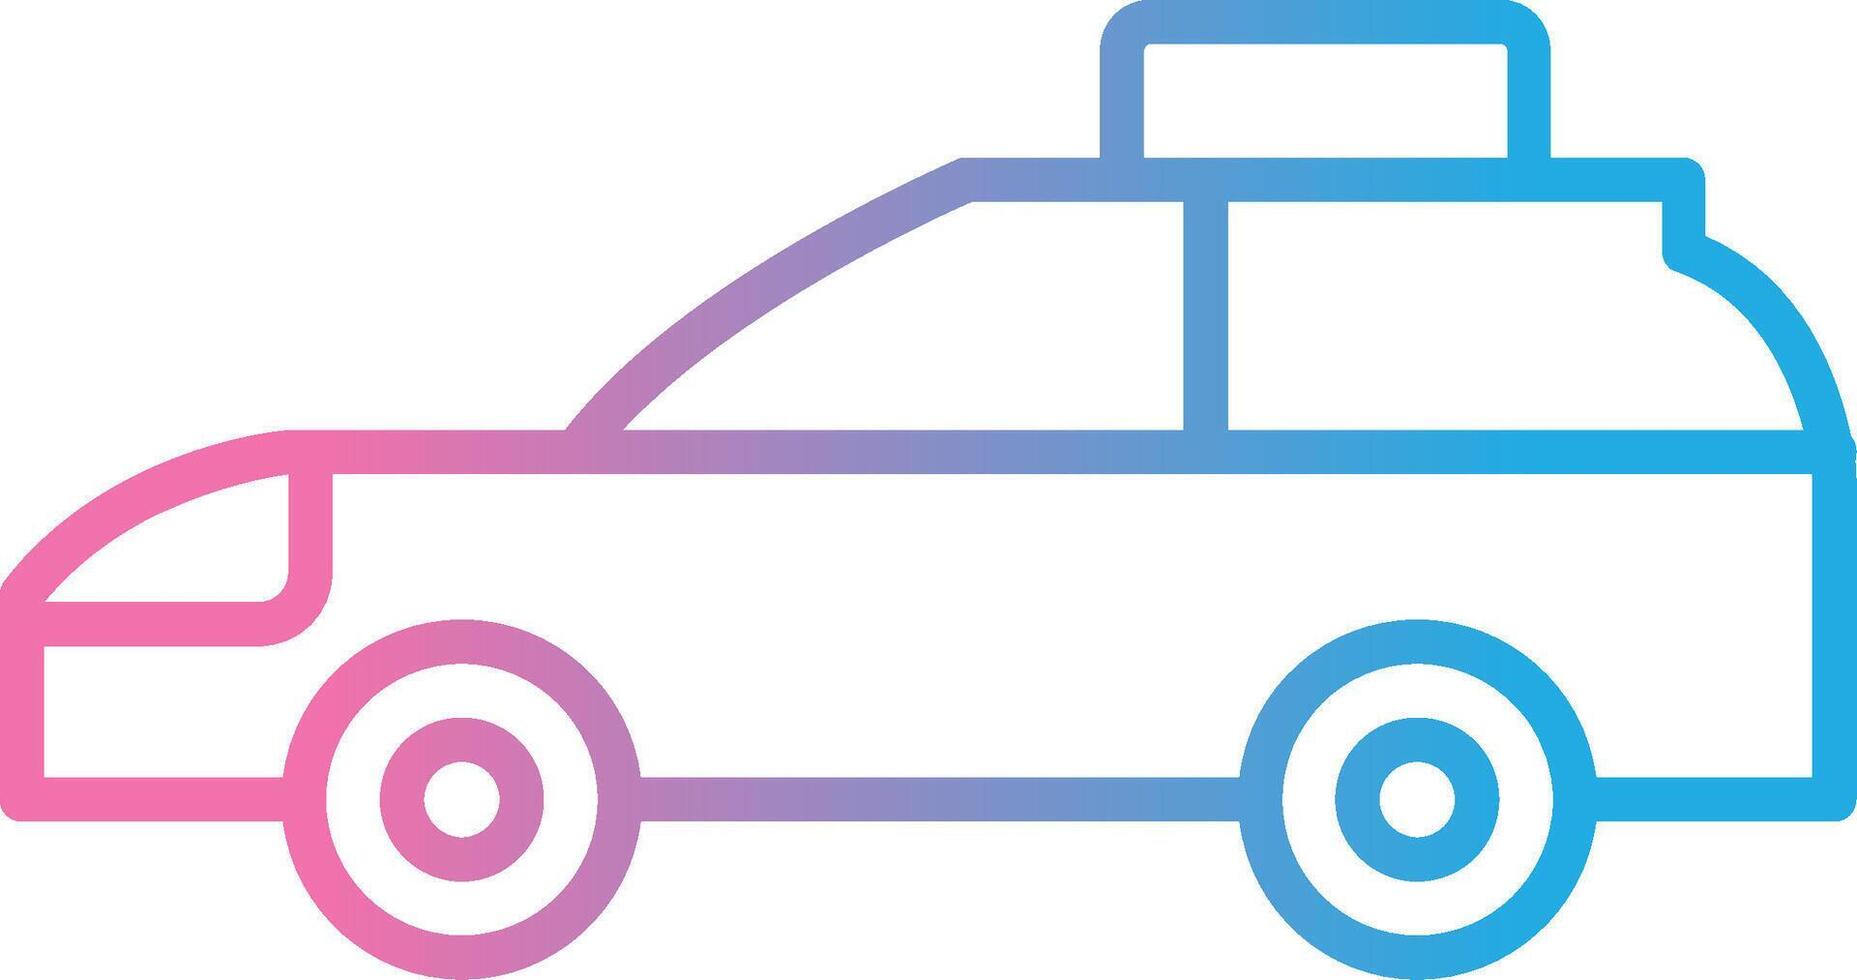 Car Line Gradient Icon Design vector